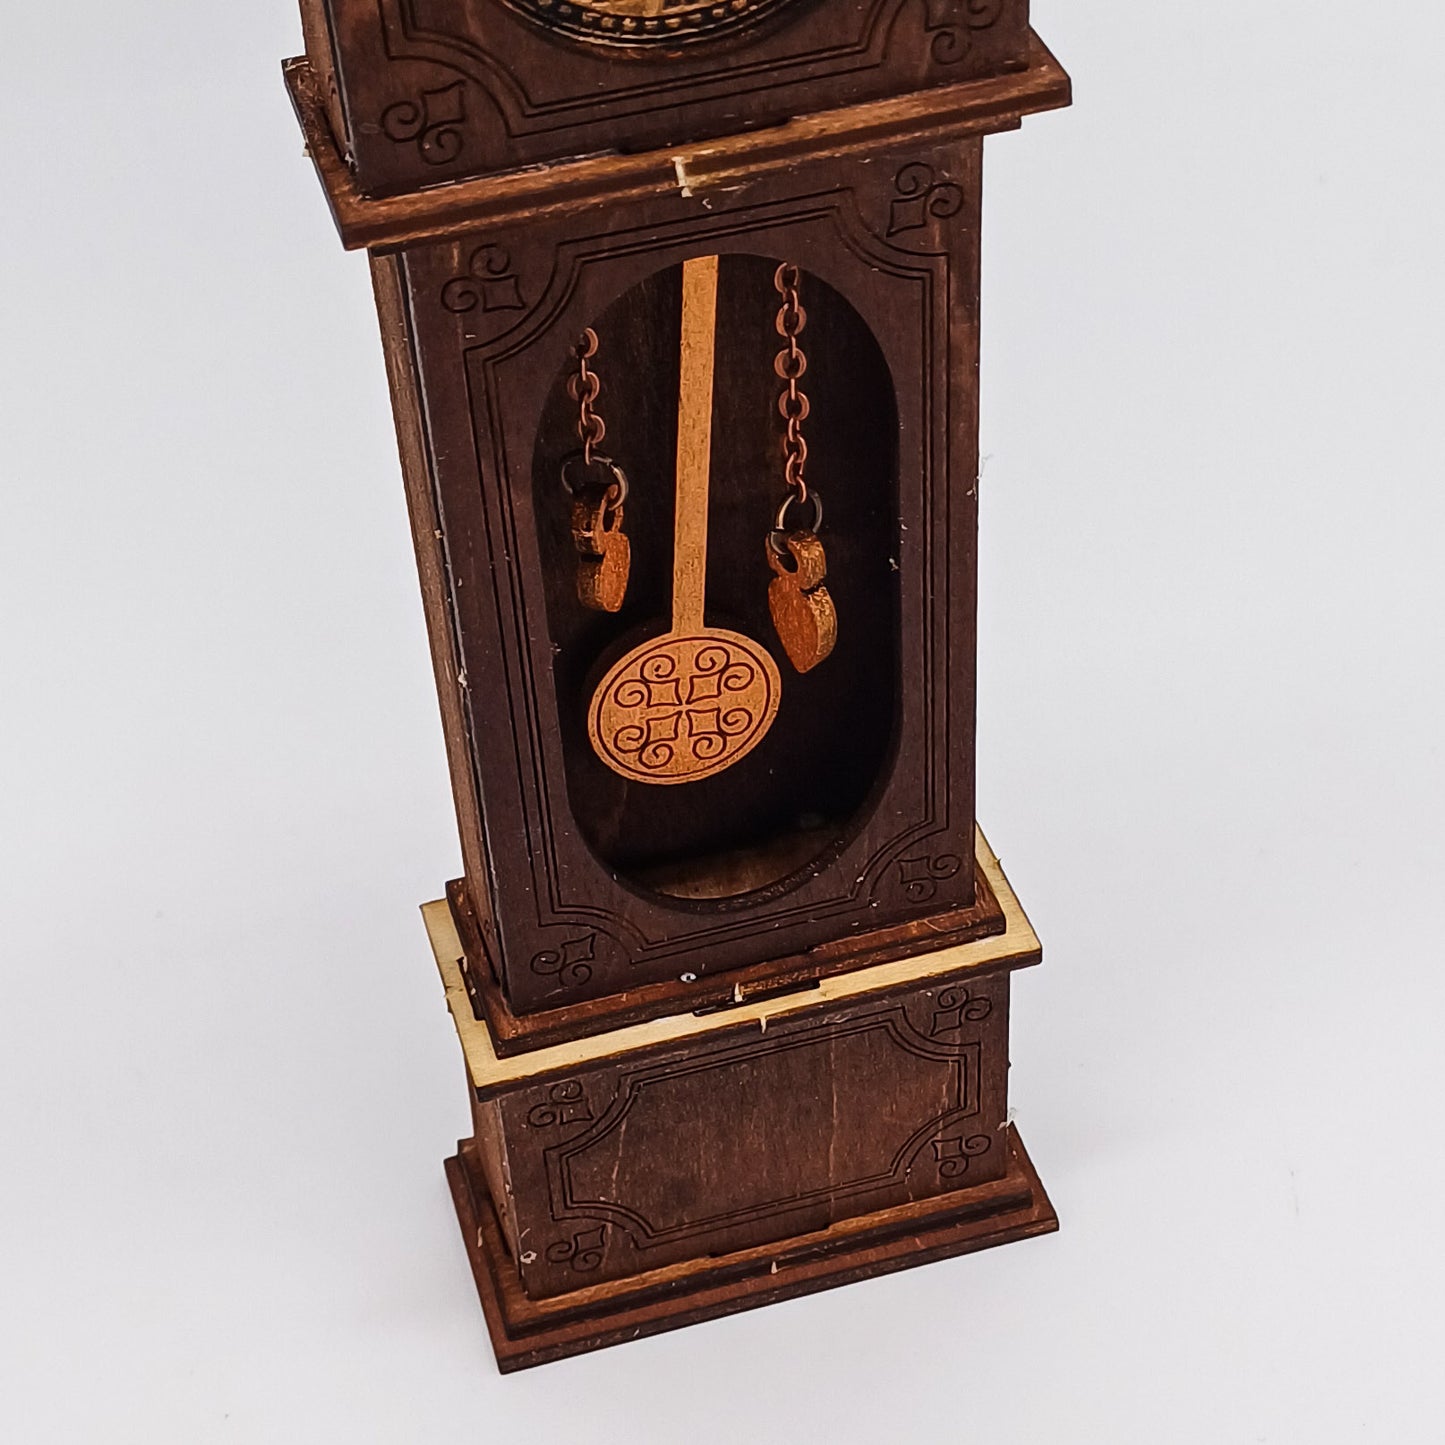 Reloj de abuelo de bricolaje en una escala de 1:12